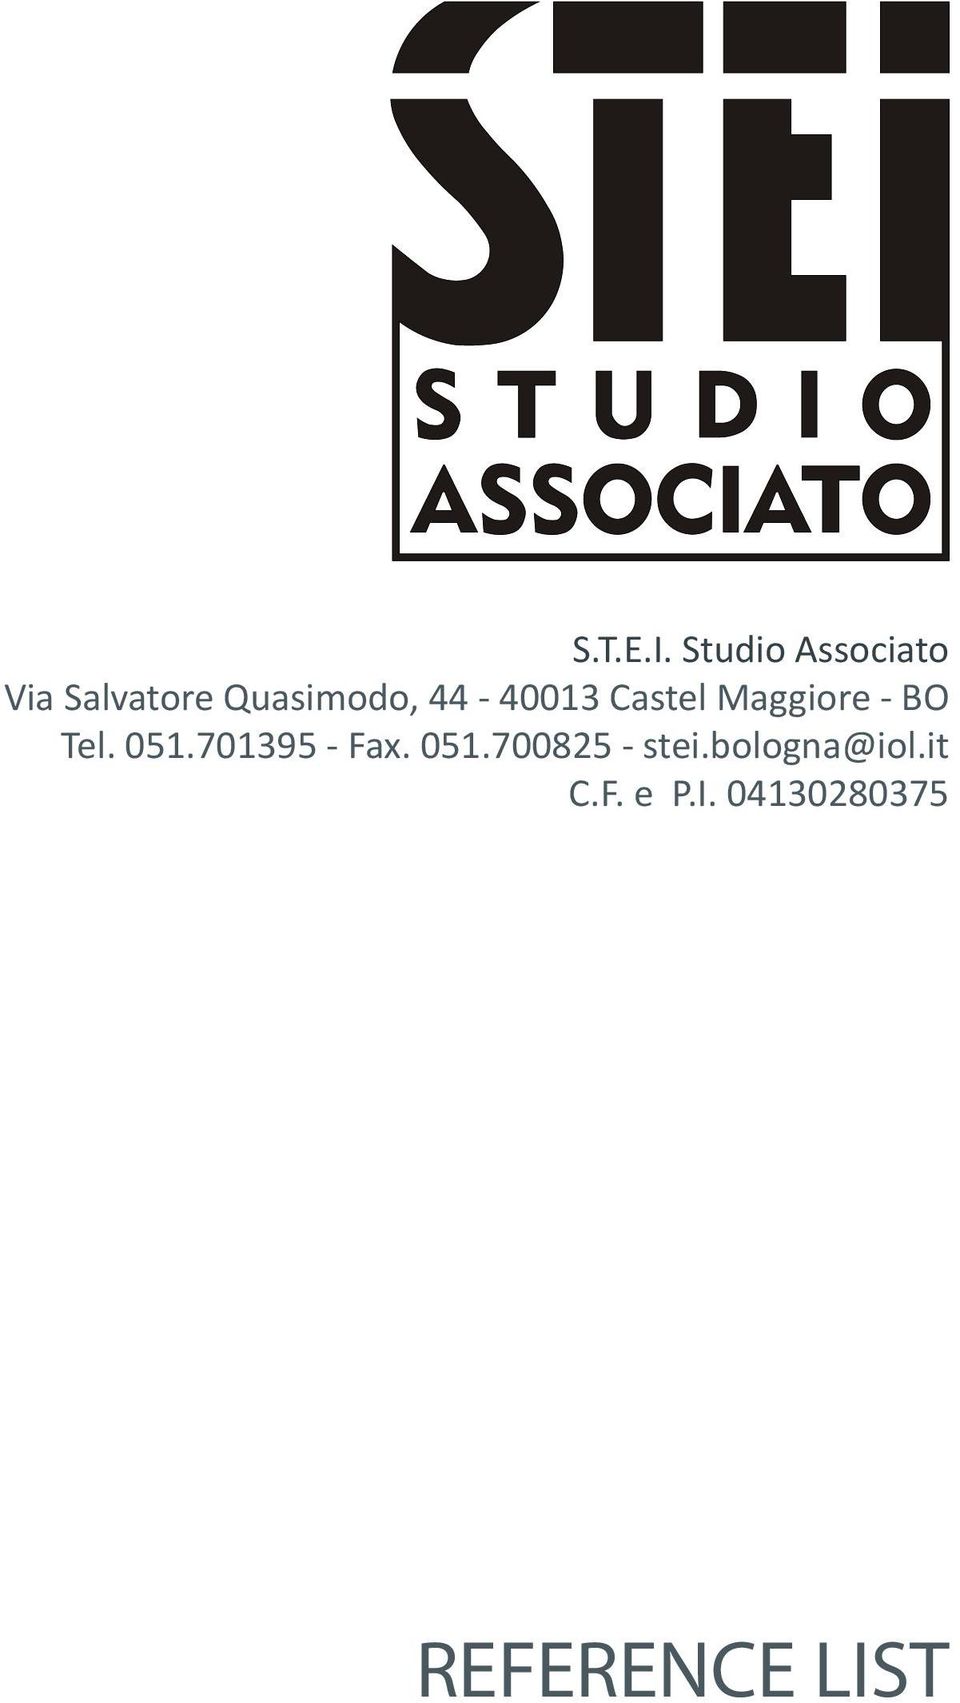 44-40013 Castel Maggiore - BO Tel. 051.